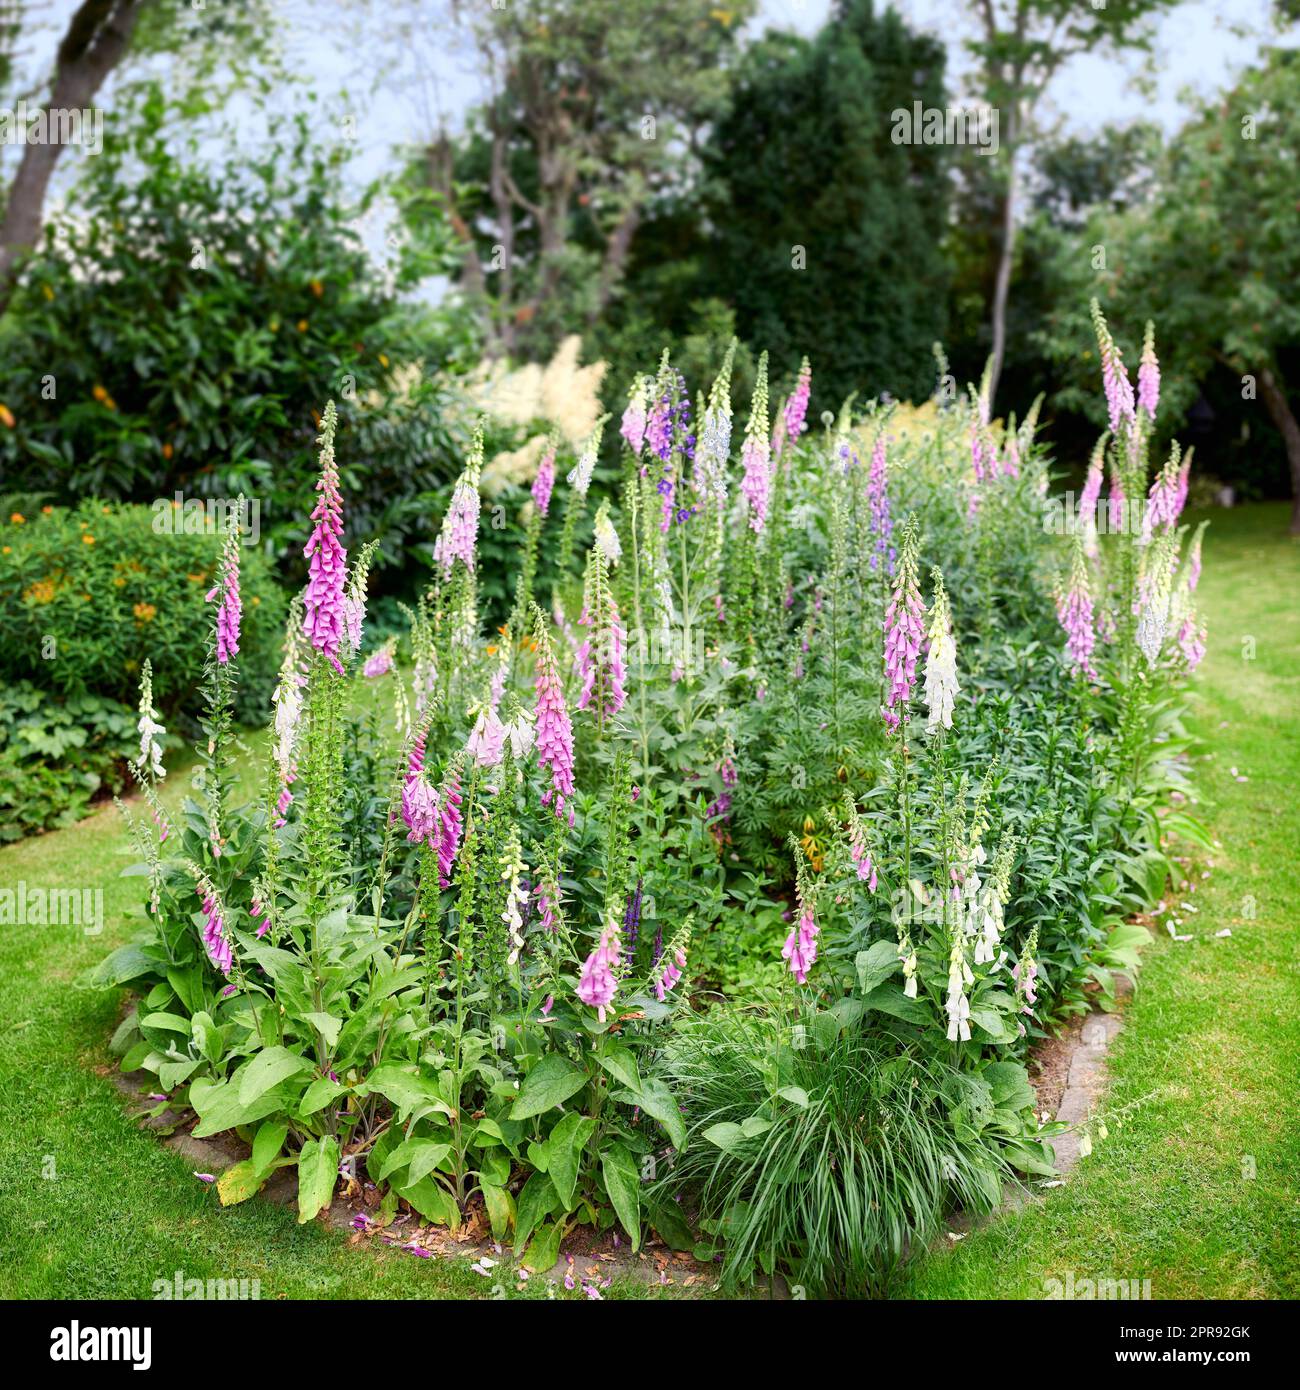 Foxhandschuhblumen wachsen in einem grünen Park. Mehrjährige lila Blütenpflanzen gärtnern, die als Dekoration in einem gepflegten Garten oder einem gepflegten Hinterhof angebaut werden. Farbenfrohes Blumenbeet auf einem Rasen Stockfoto